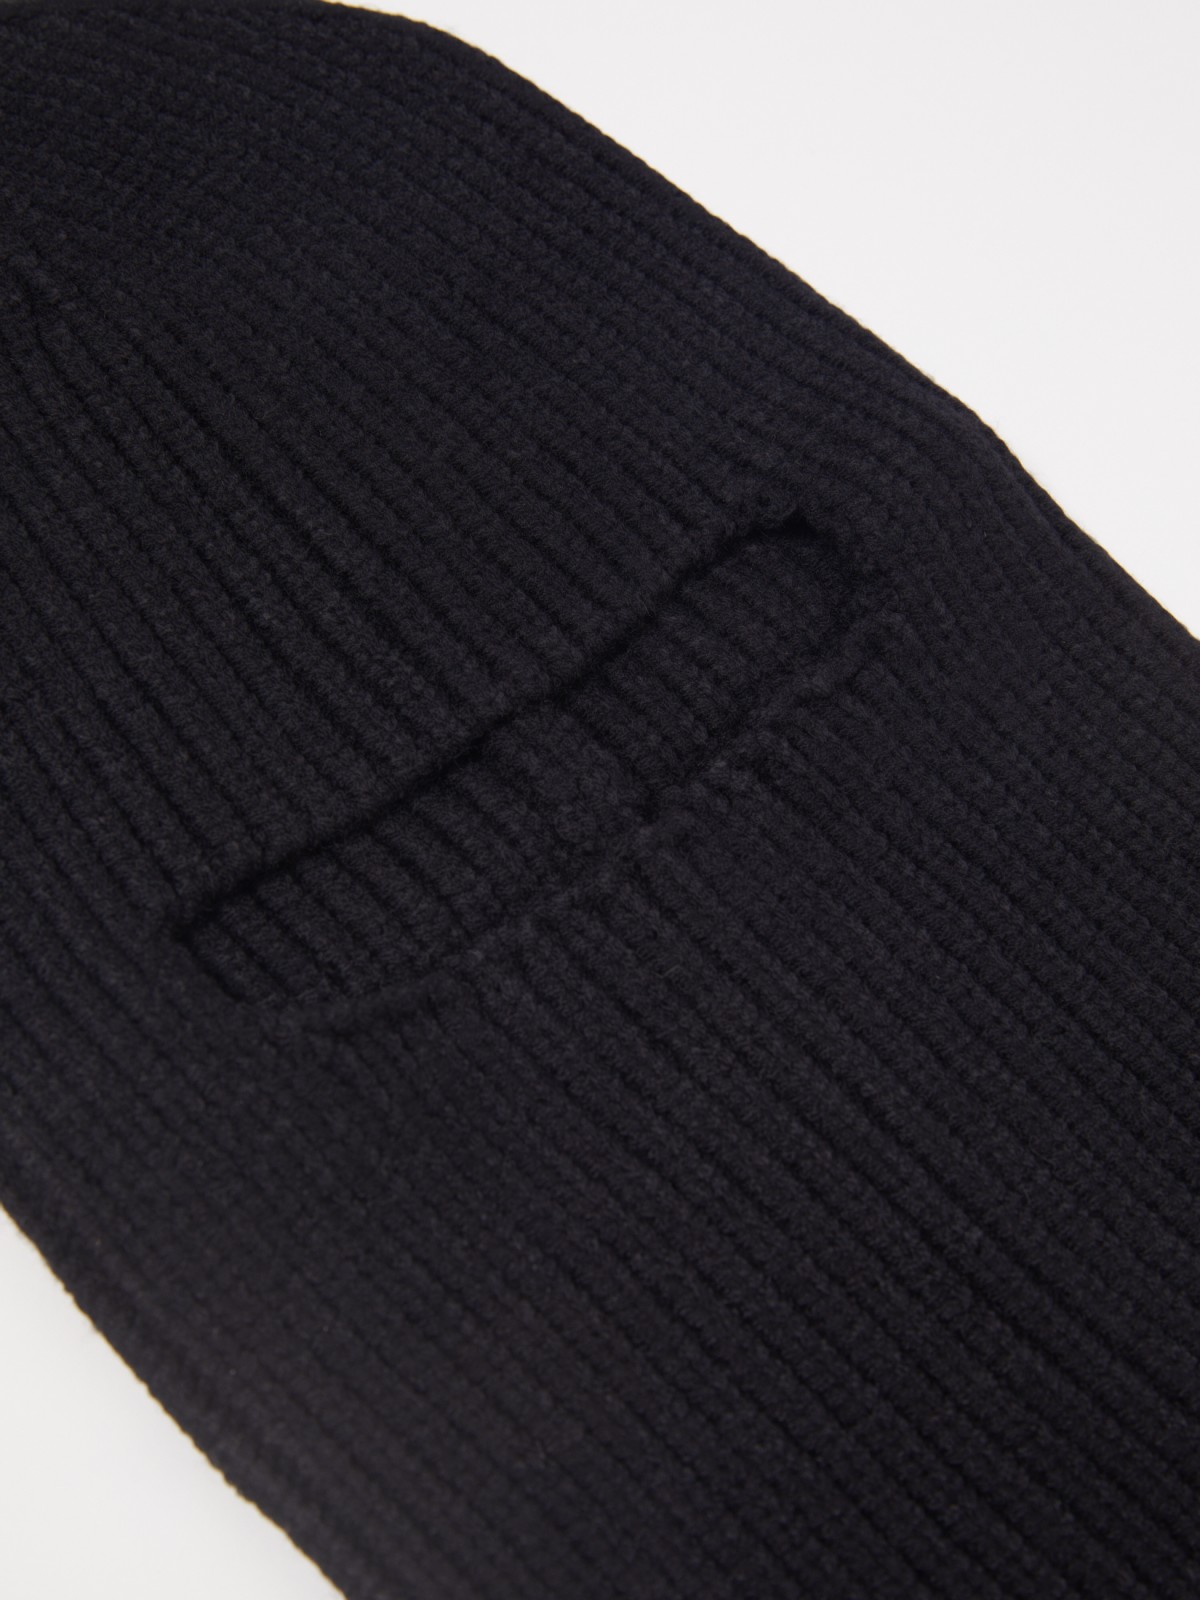 Тёплая куртка с высоким воротником-стойкой zolla 021335102054, цвет черный, размер XS - фото 3